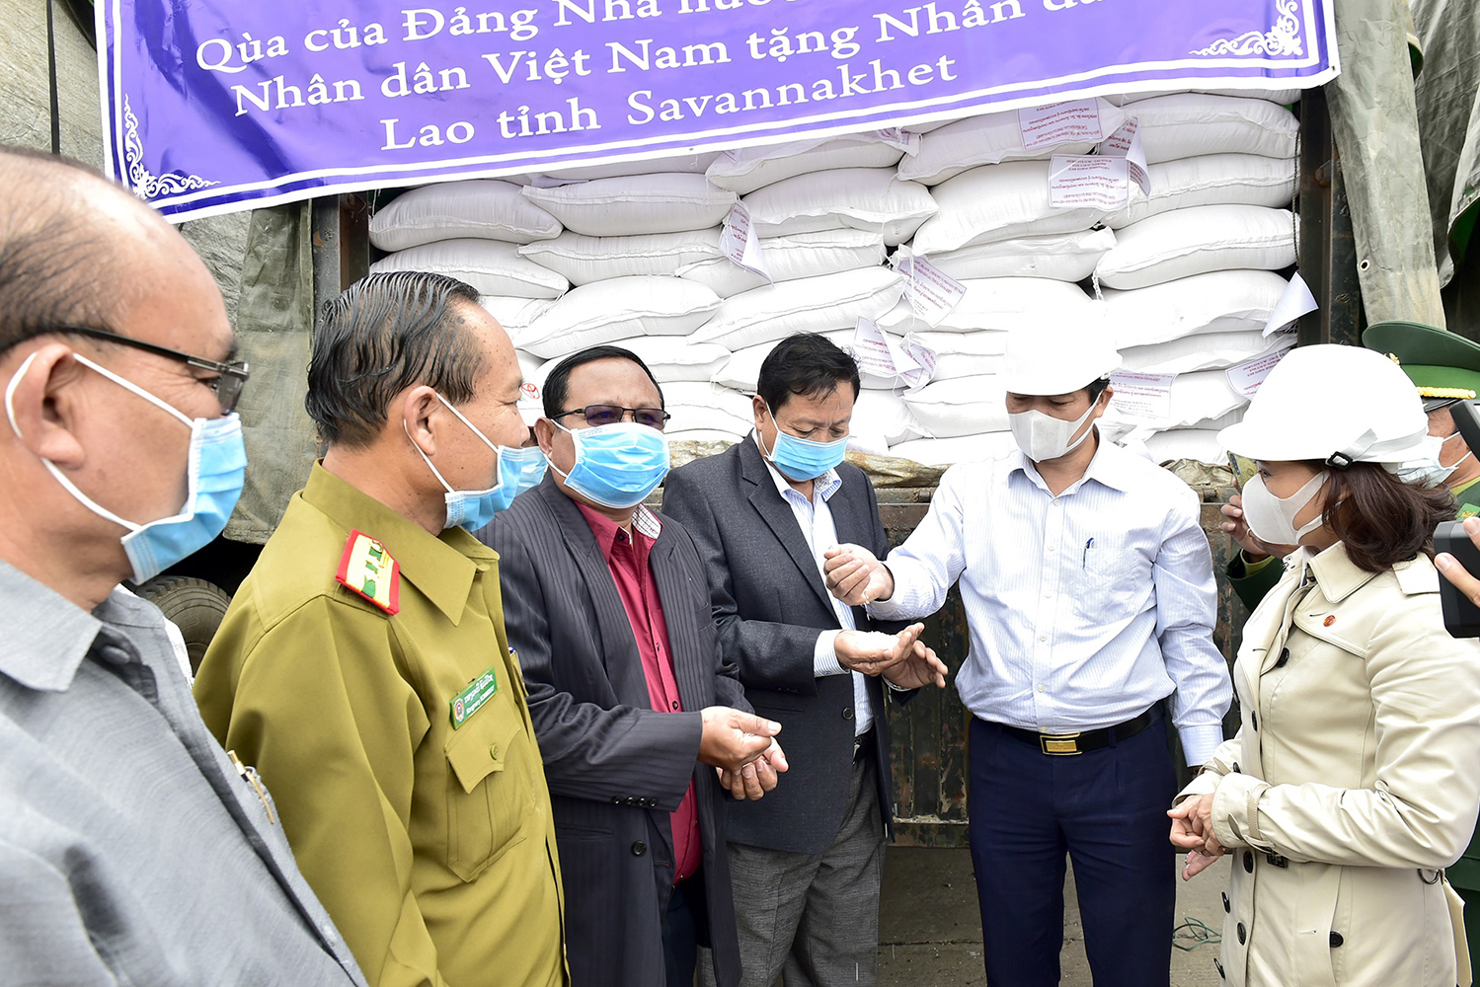 Dự kiến, toàn bộ số lượng 1.000 tấn gạo sẽ được Cục DTNN khu vực Nghệ Tĩnh bàn giao cho Lào trước ngày 05/12/2020.